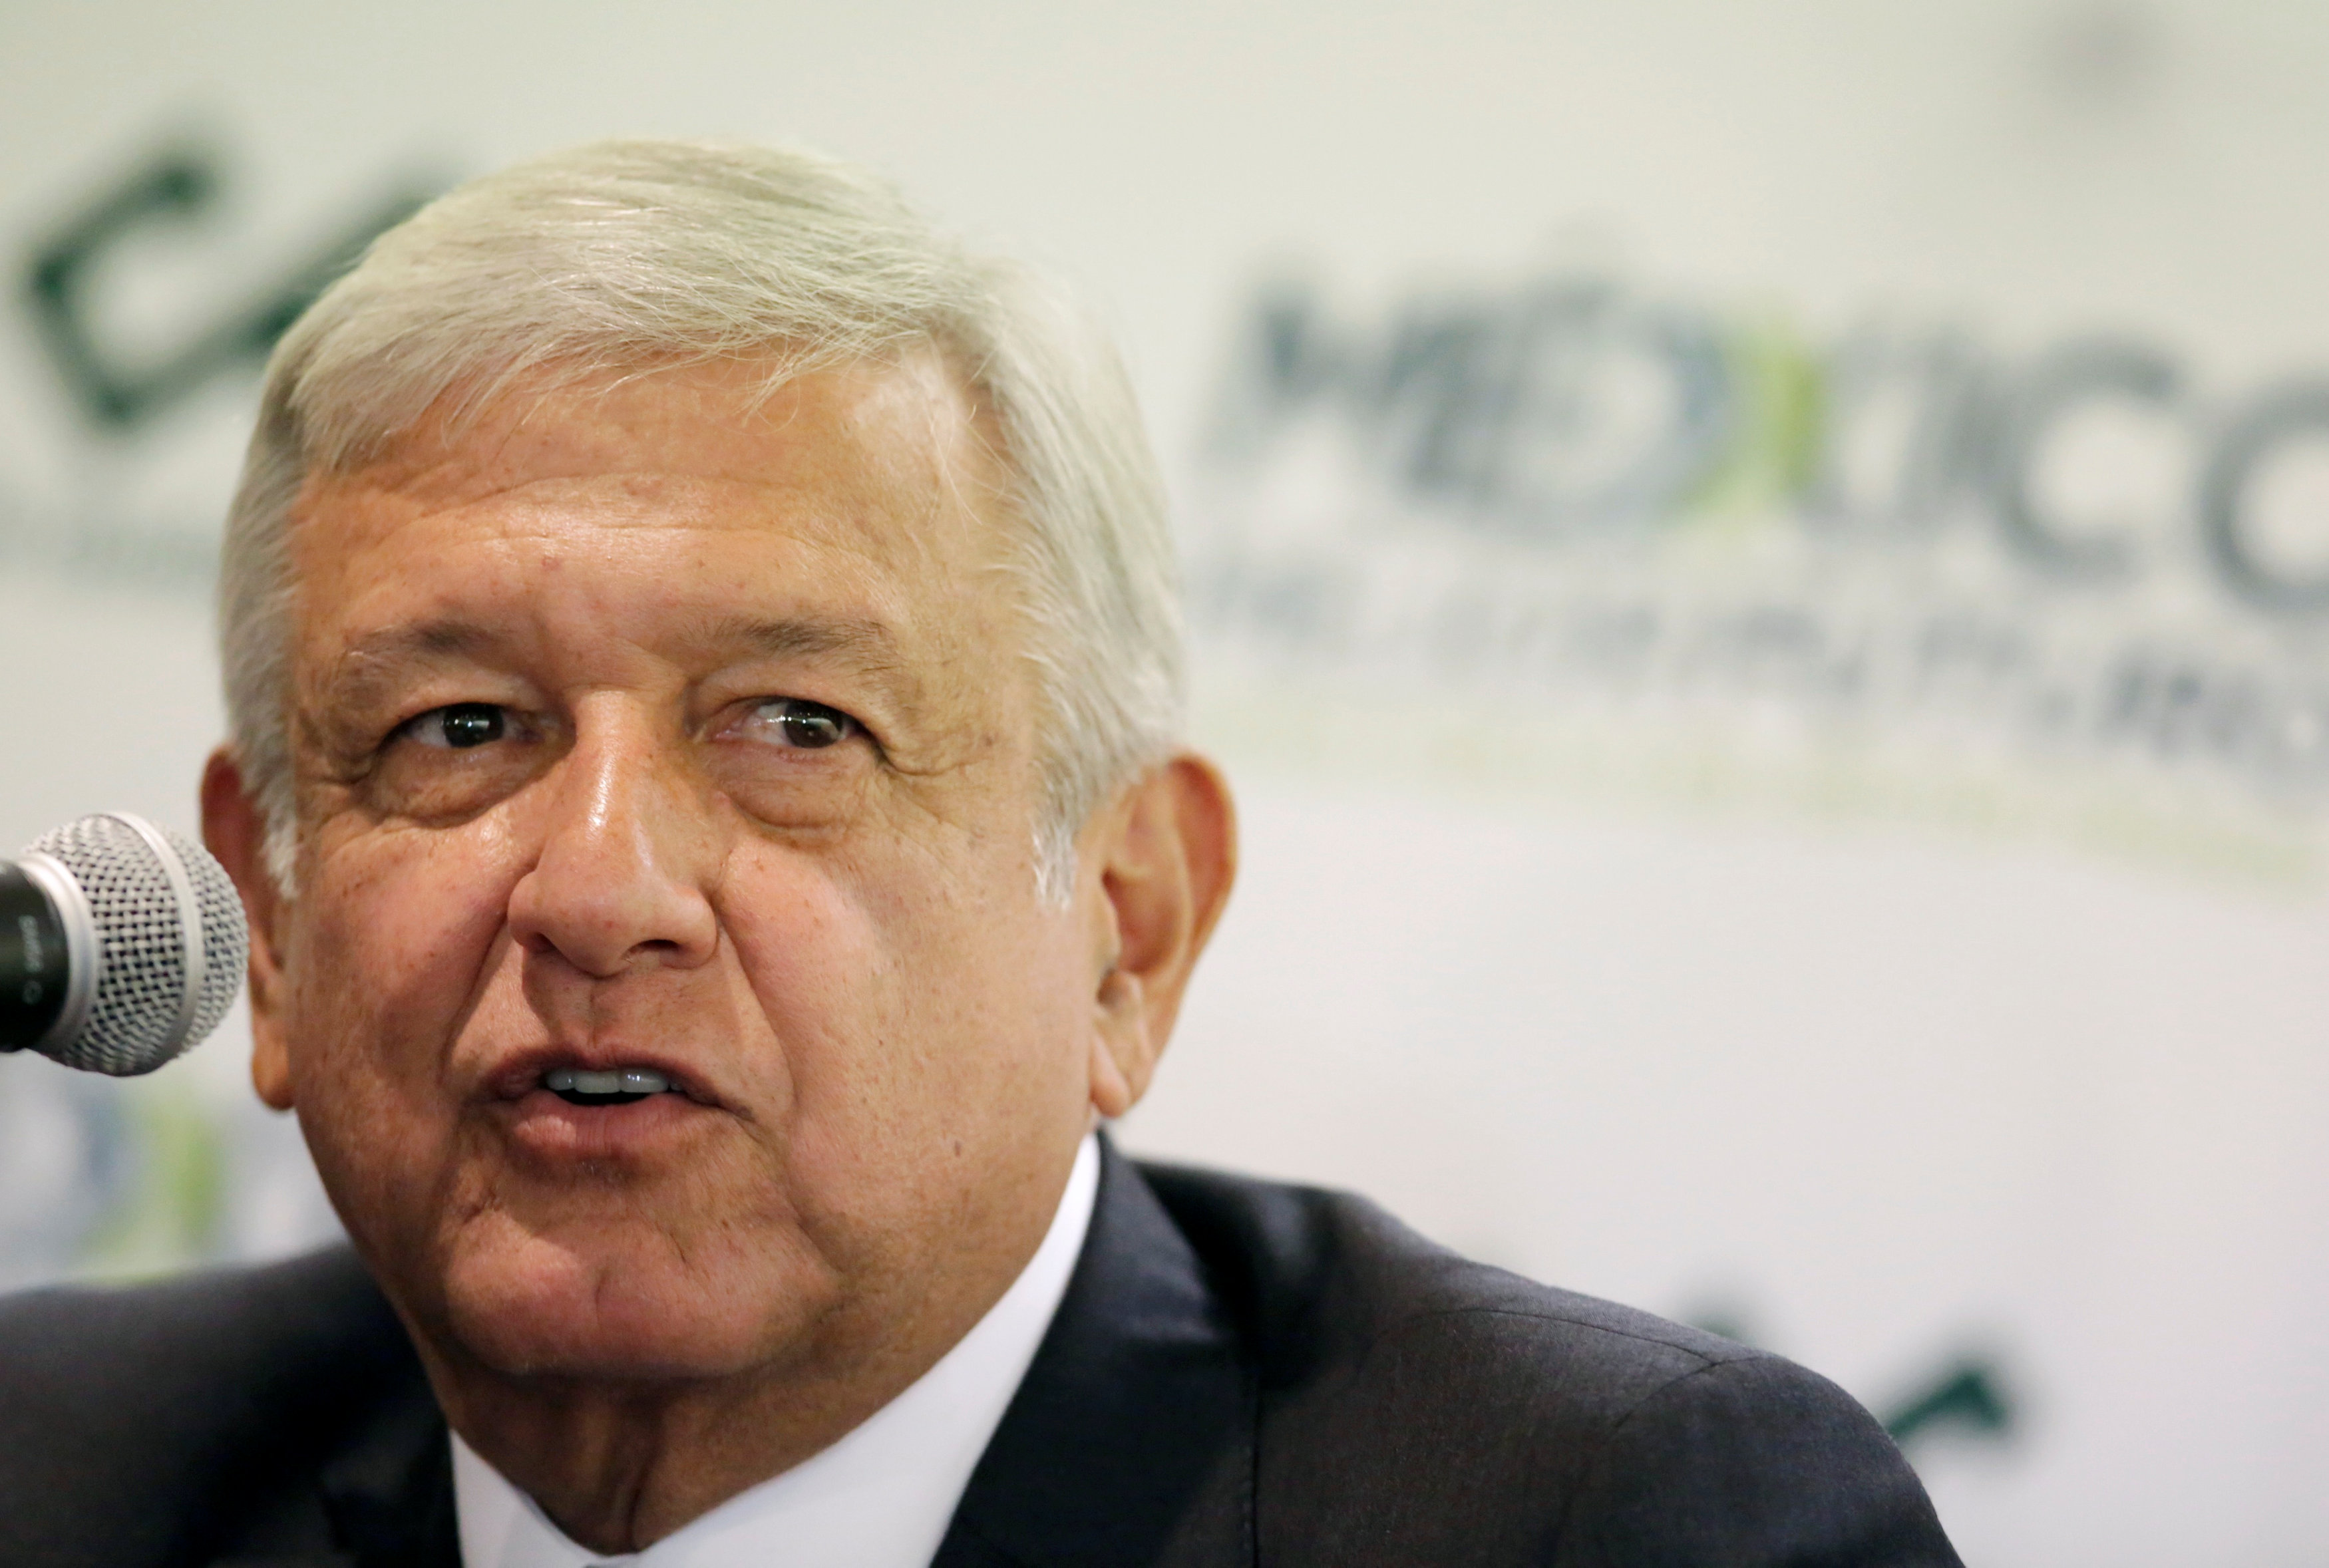 El presidente electo Andrés Manuel López Obrador, habla luego de una reunión con el Consejo Coordinador Empresarial en la Ciudad de México.